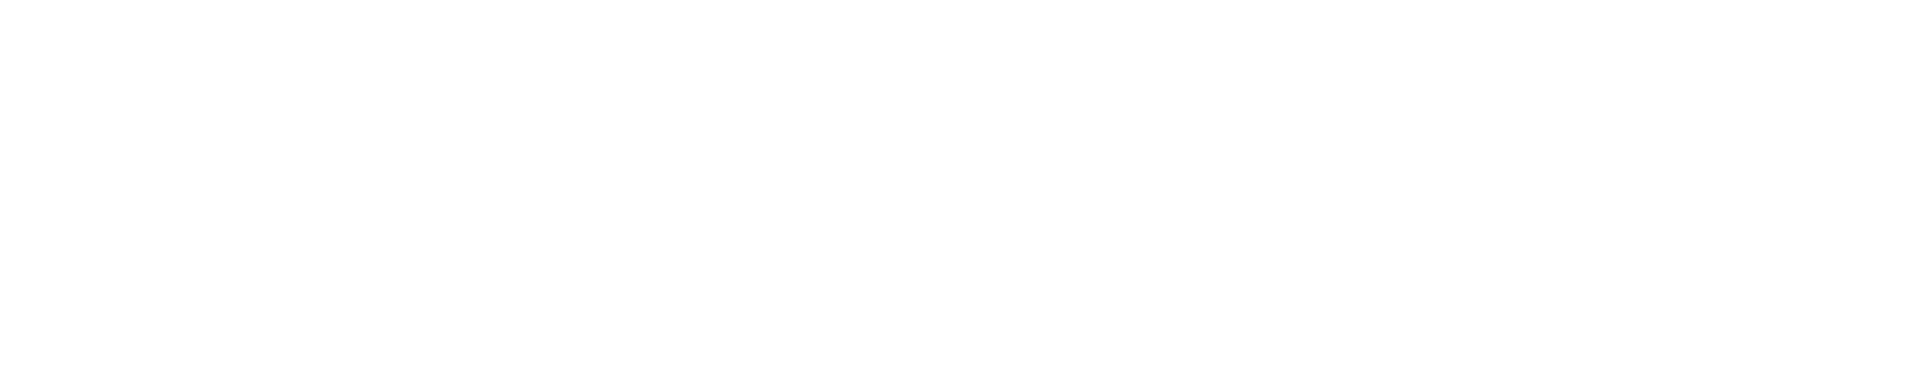 eBike Compostela - Plan de recuperación trasformación y resiliencia